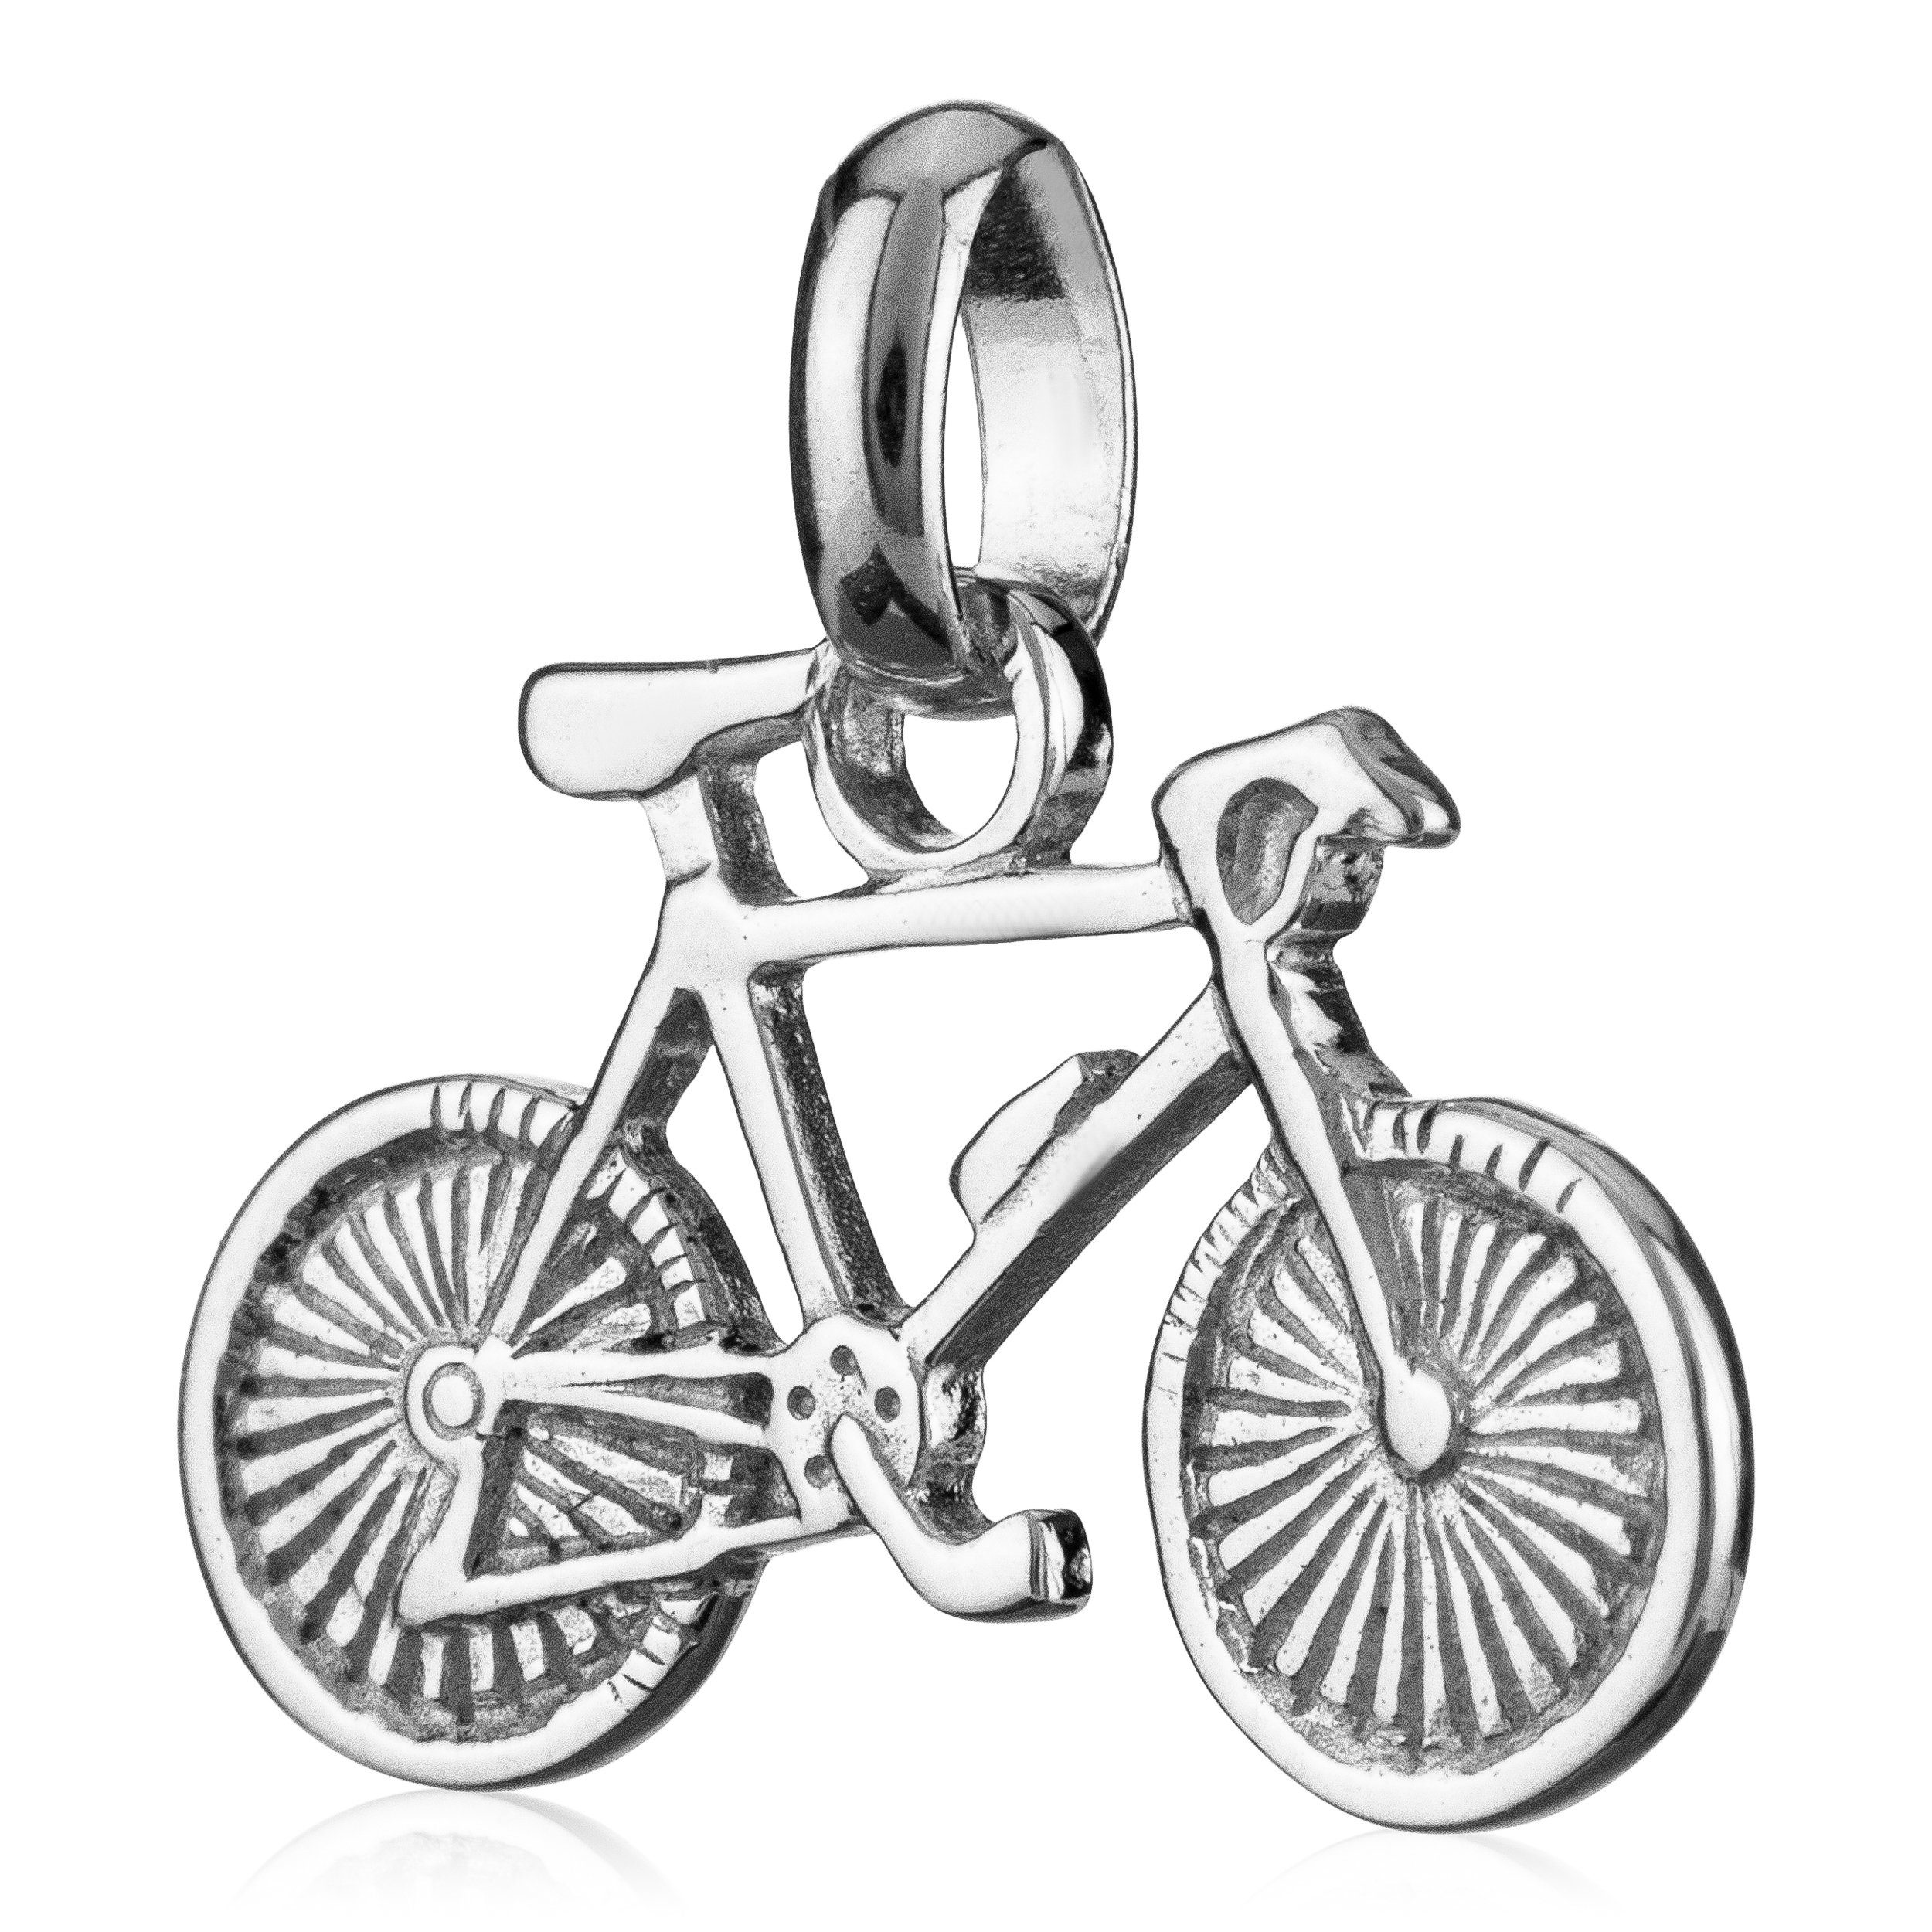 NKlaus Kettenanhänger Fahrrad klein Kettenanhänger 9x17mm Bike Silber 92